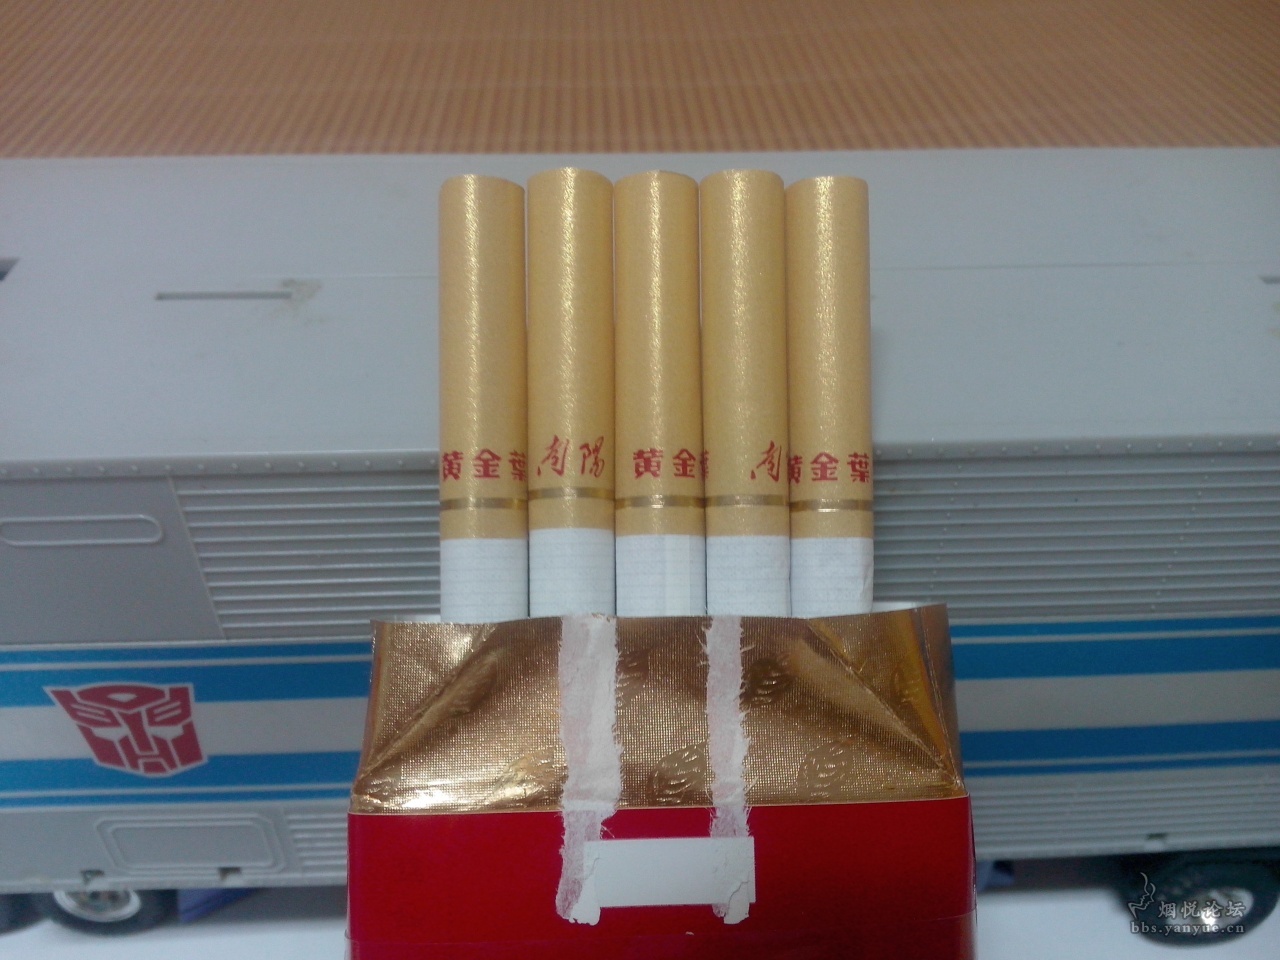 四川中烟香烟价格表图,四川香烟价格表和图片 - 伤感说说吧